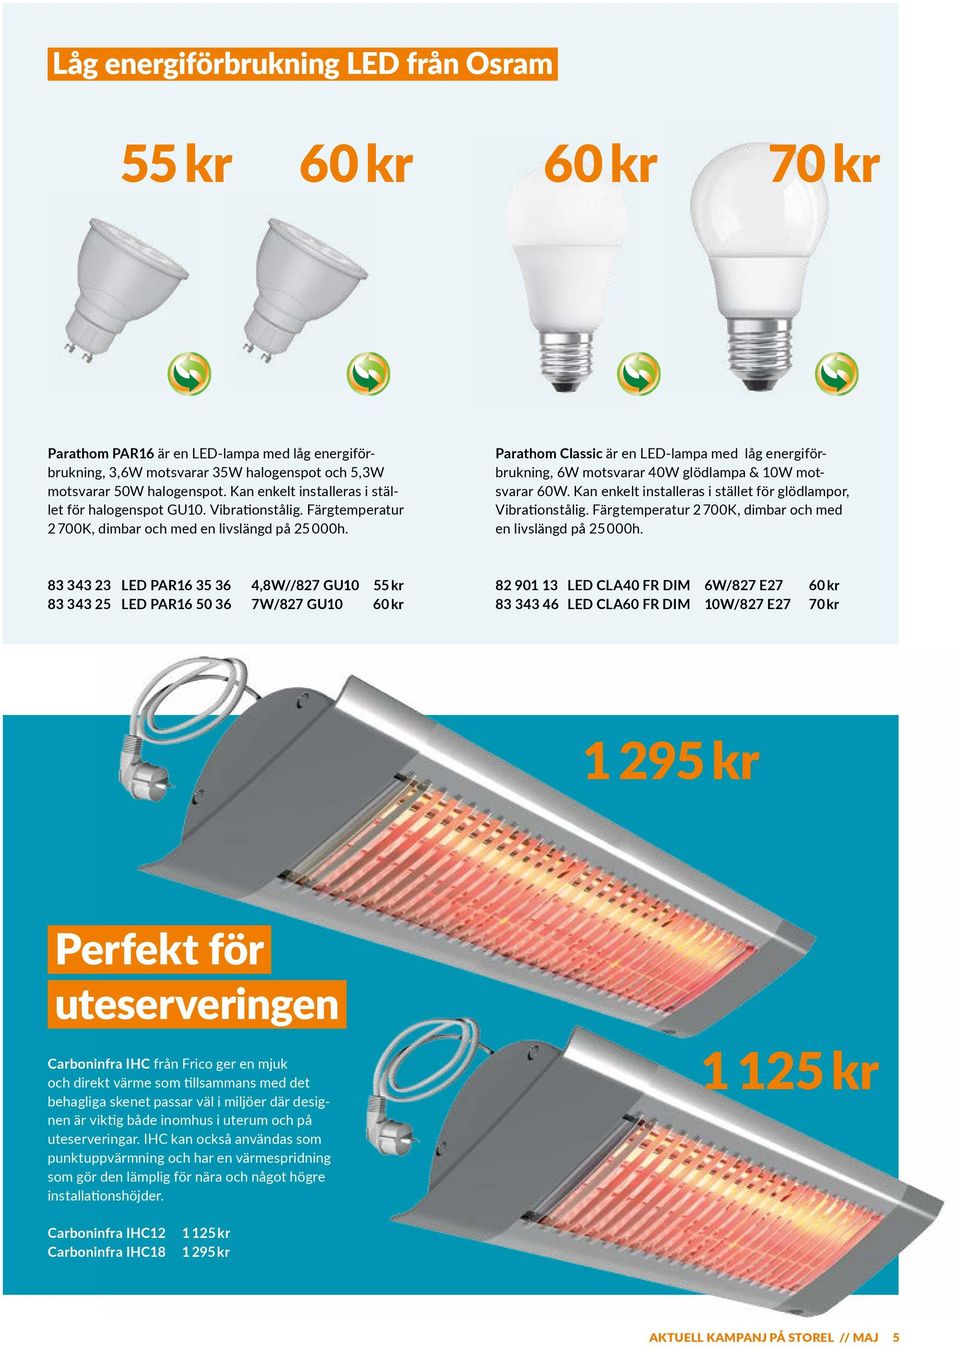 Parathom Classic är en LED-lampa med låg energiförbrukning, 6W motsvarar 40W glödlampa & 10W motsvarar 60W. Kan enkelt installeras i stället för glödlampor, Vibrationstålig.